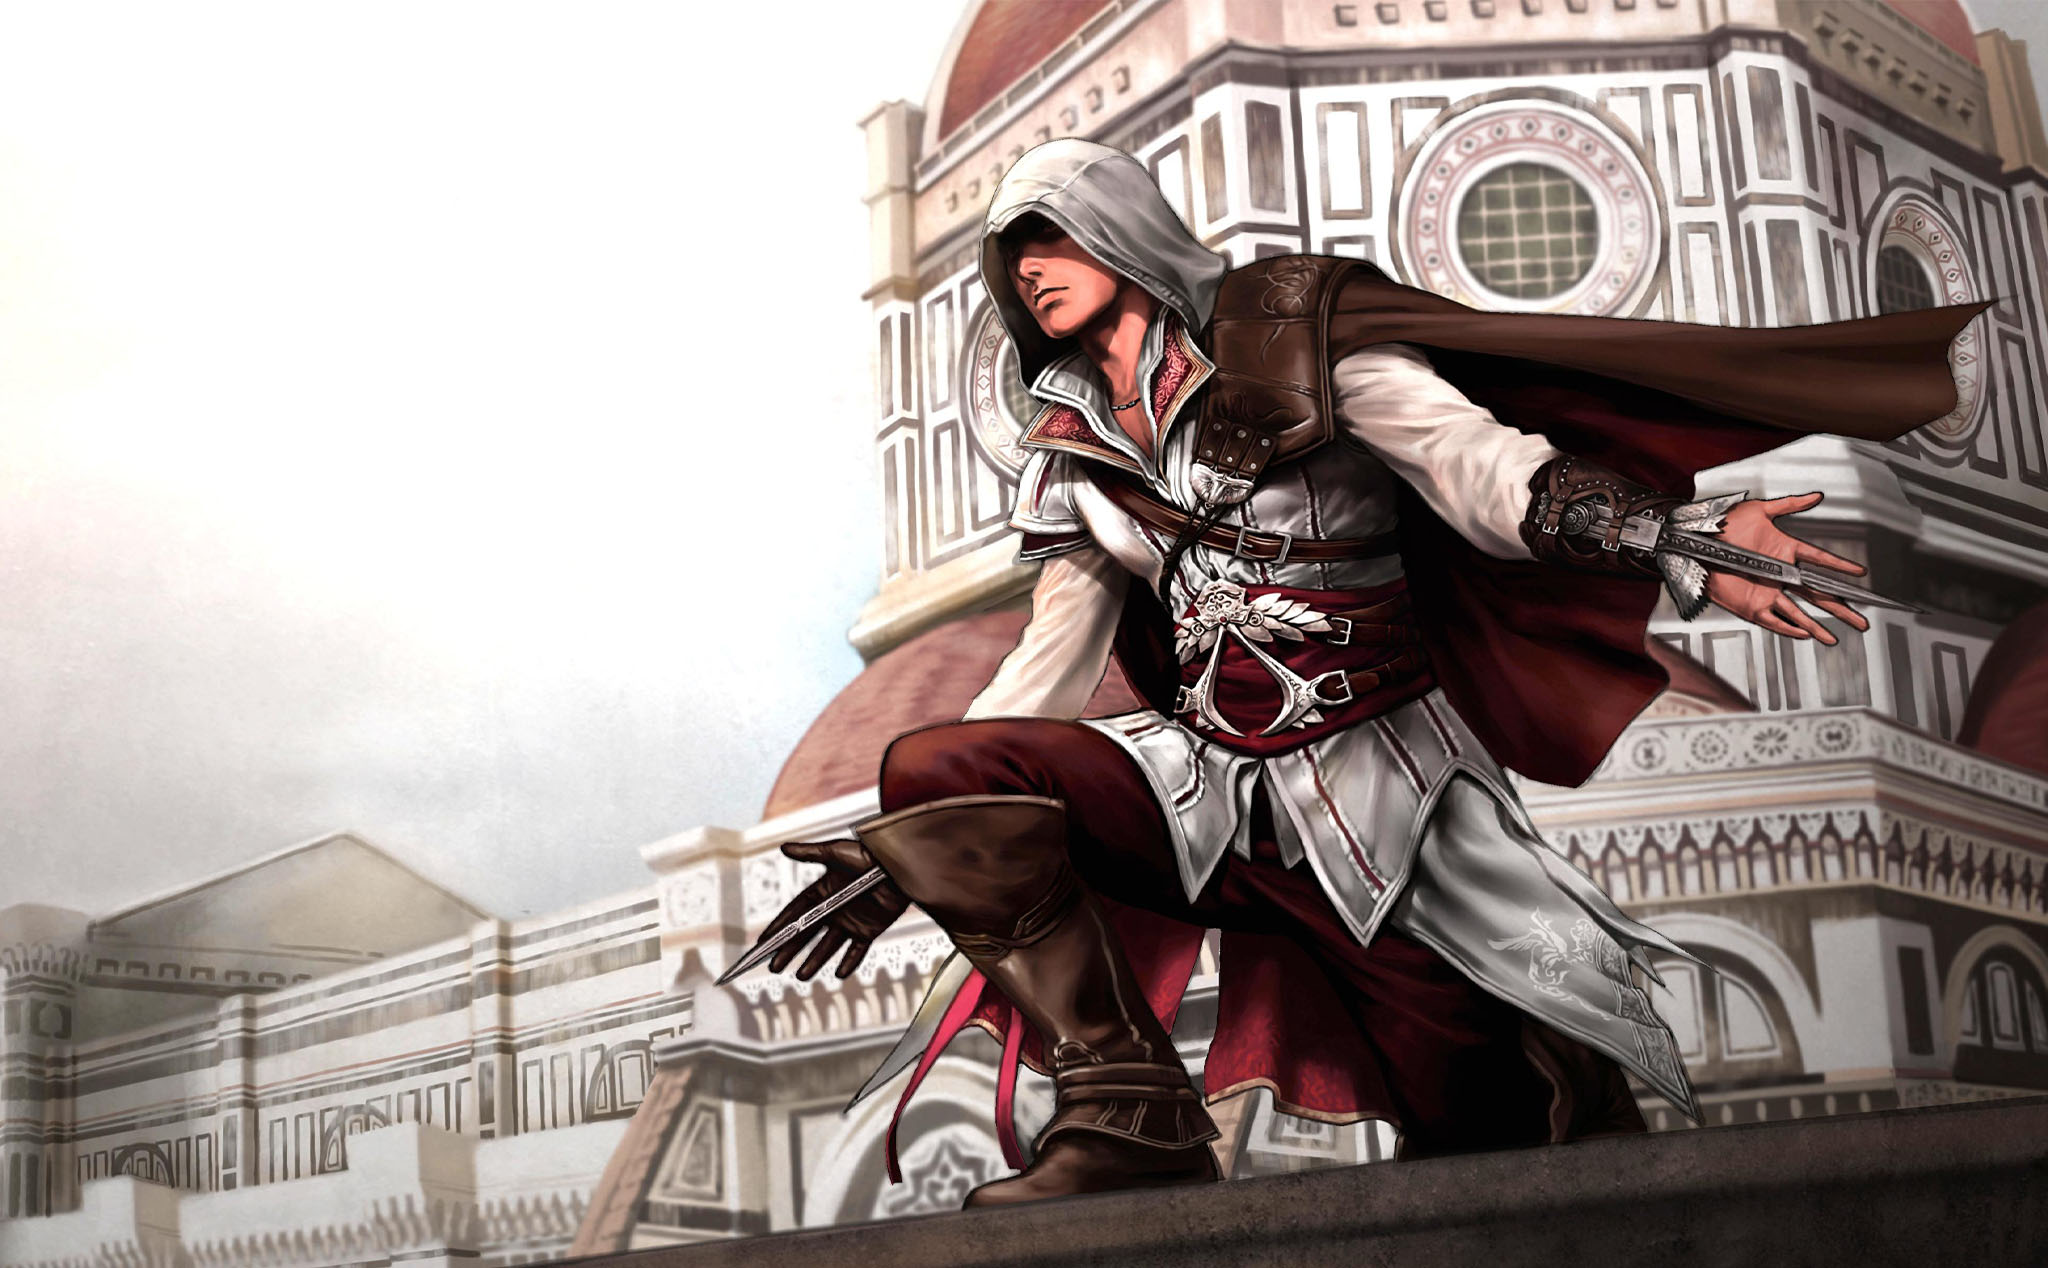 #GamePC: Tuần này Assassin’s Creed 2 sẽ miễn phí trên nền tảng Uplay của Ubisoft